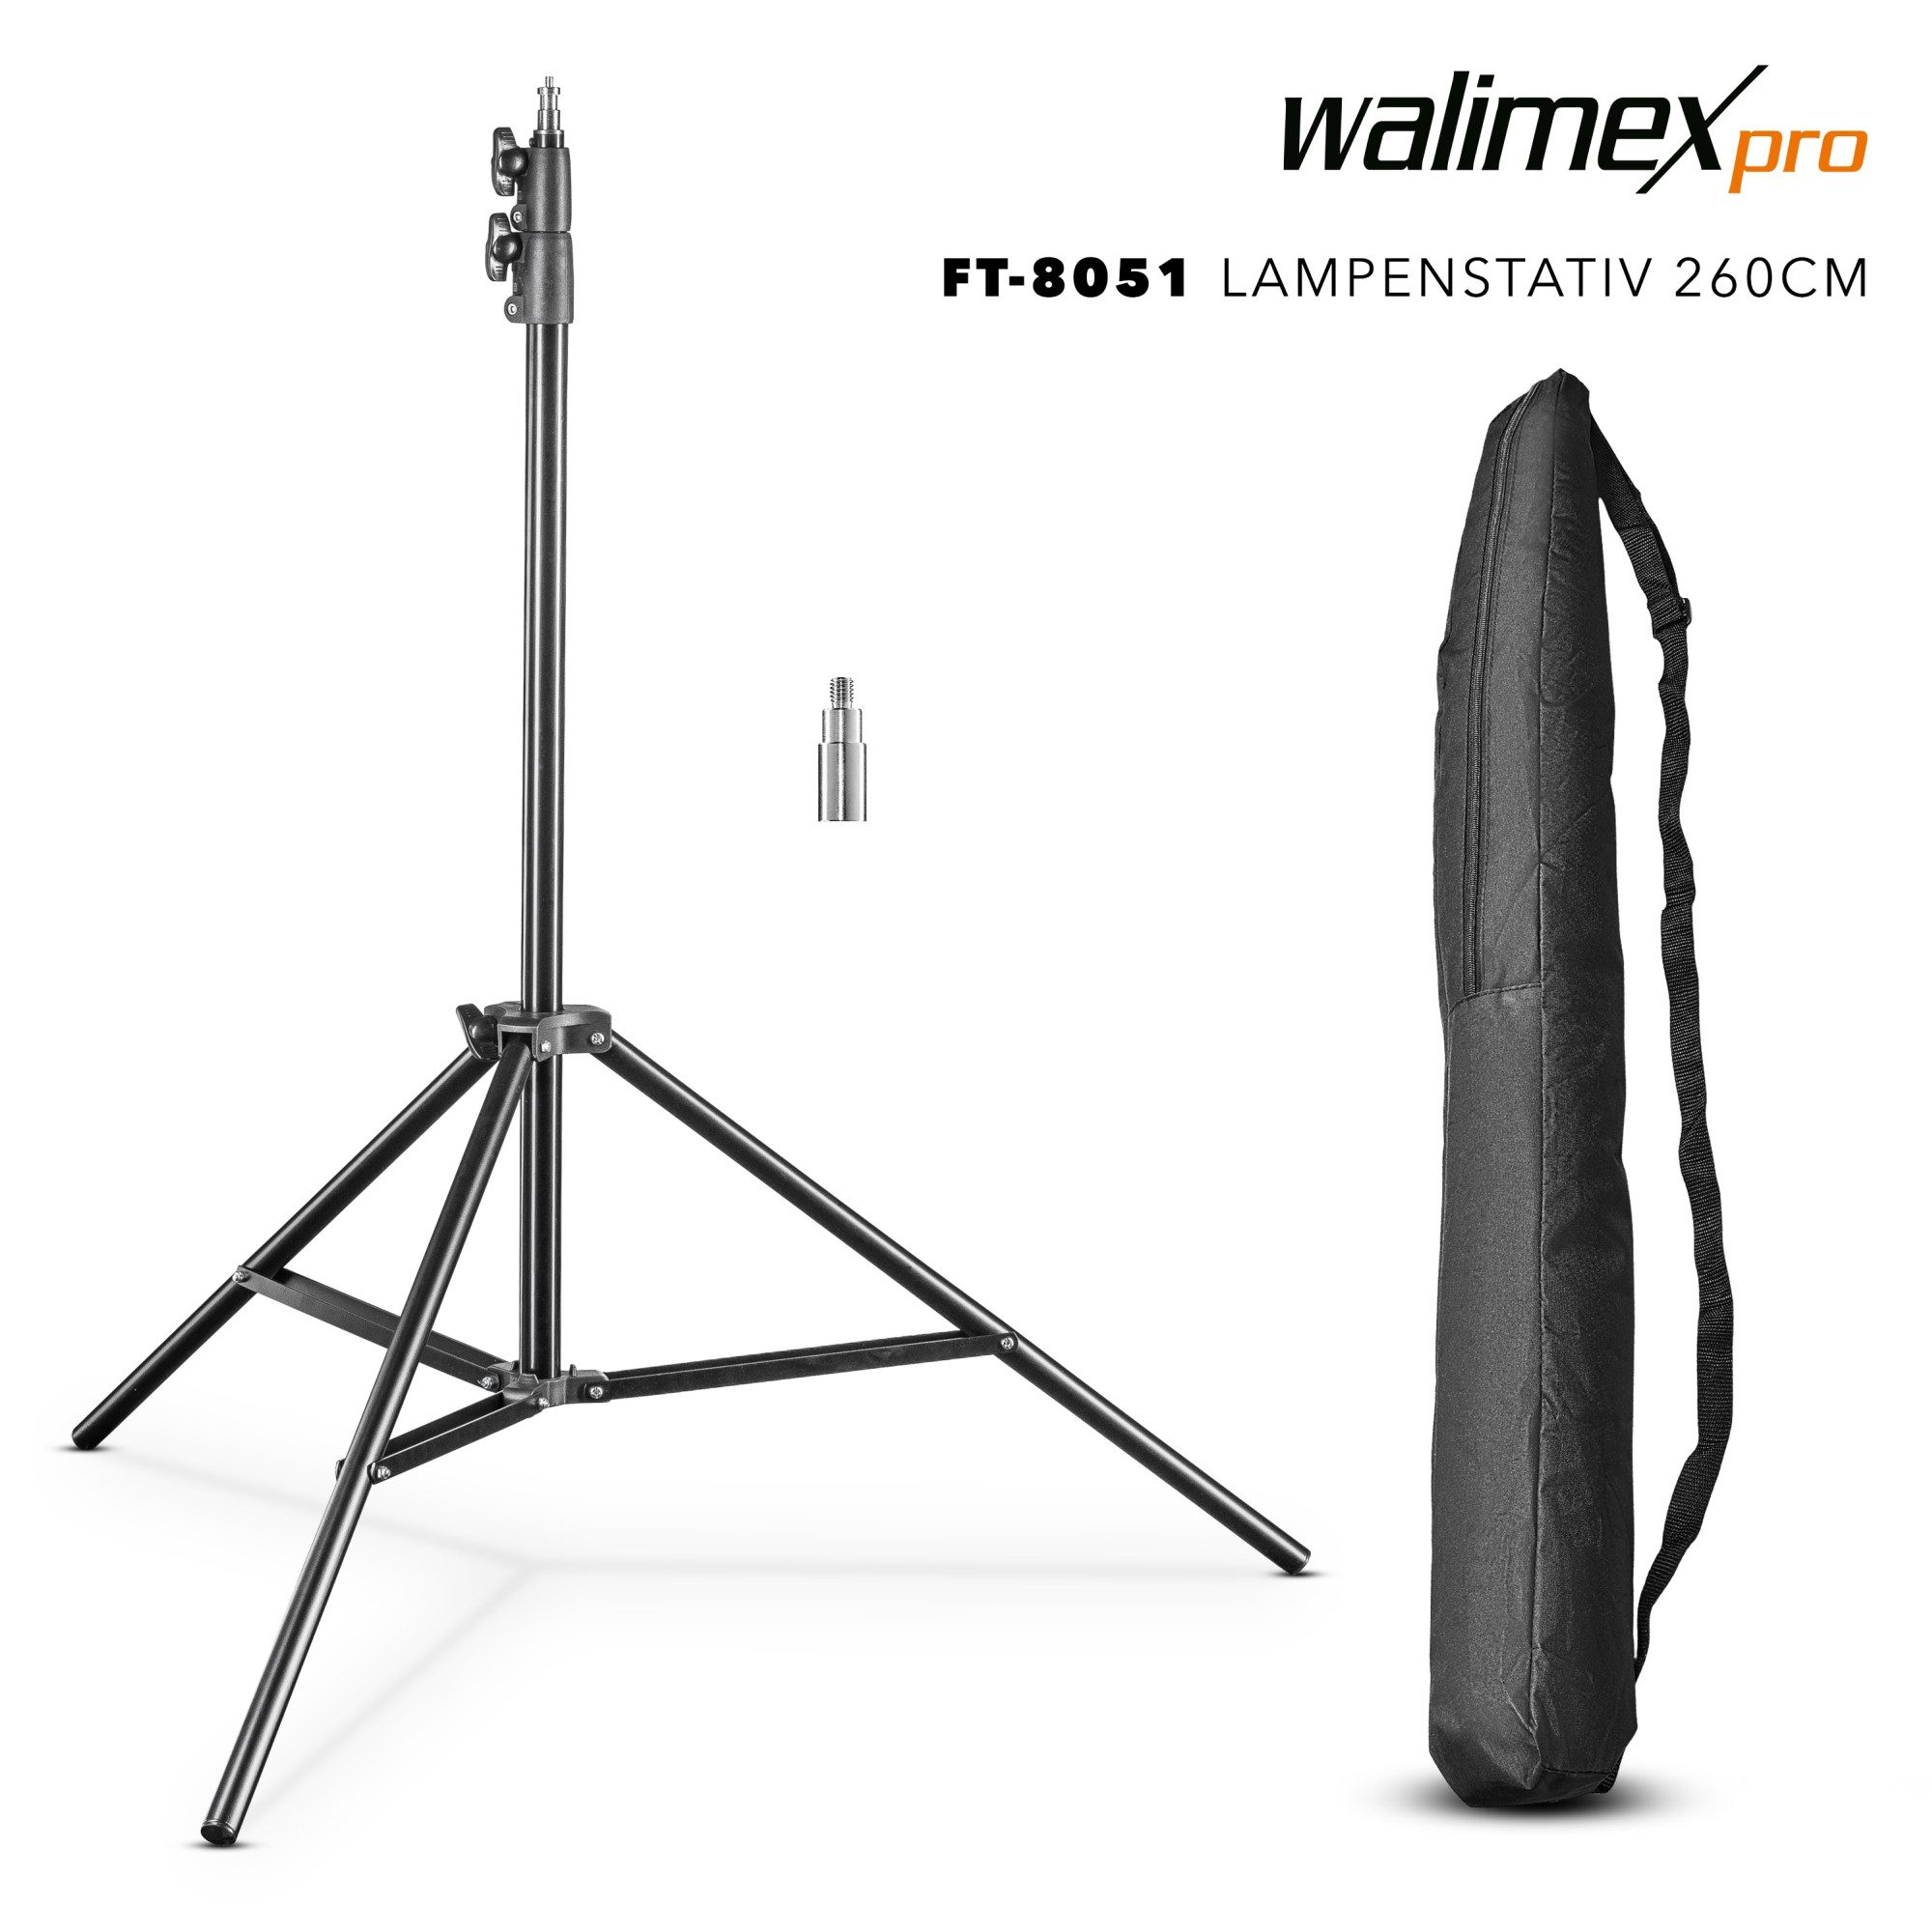 Walimex Pro FT-8051 Lampenstativ 260cm Lampenstativ